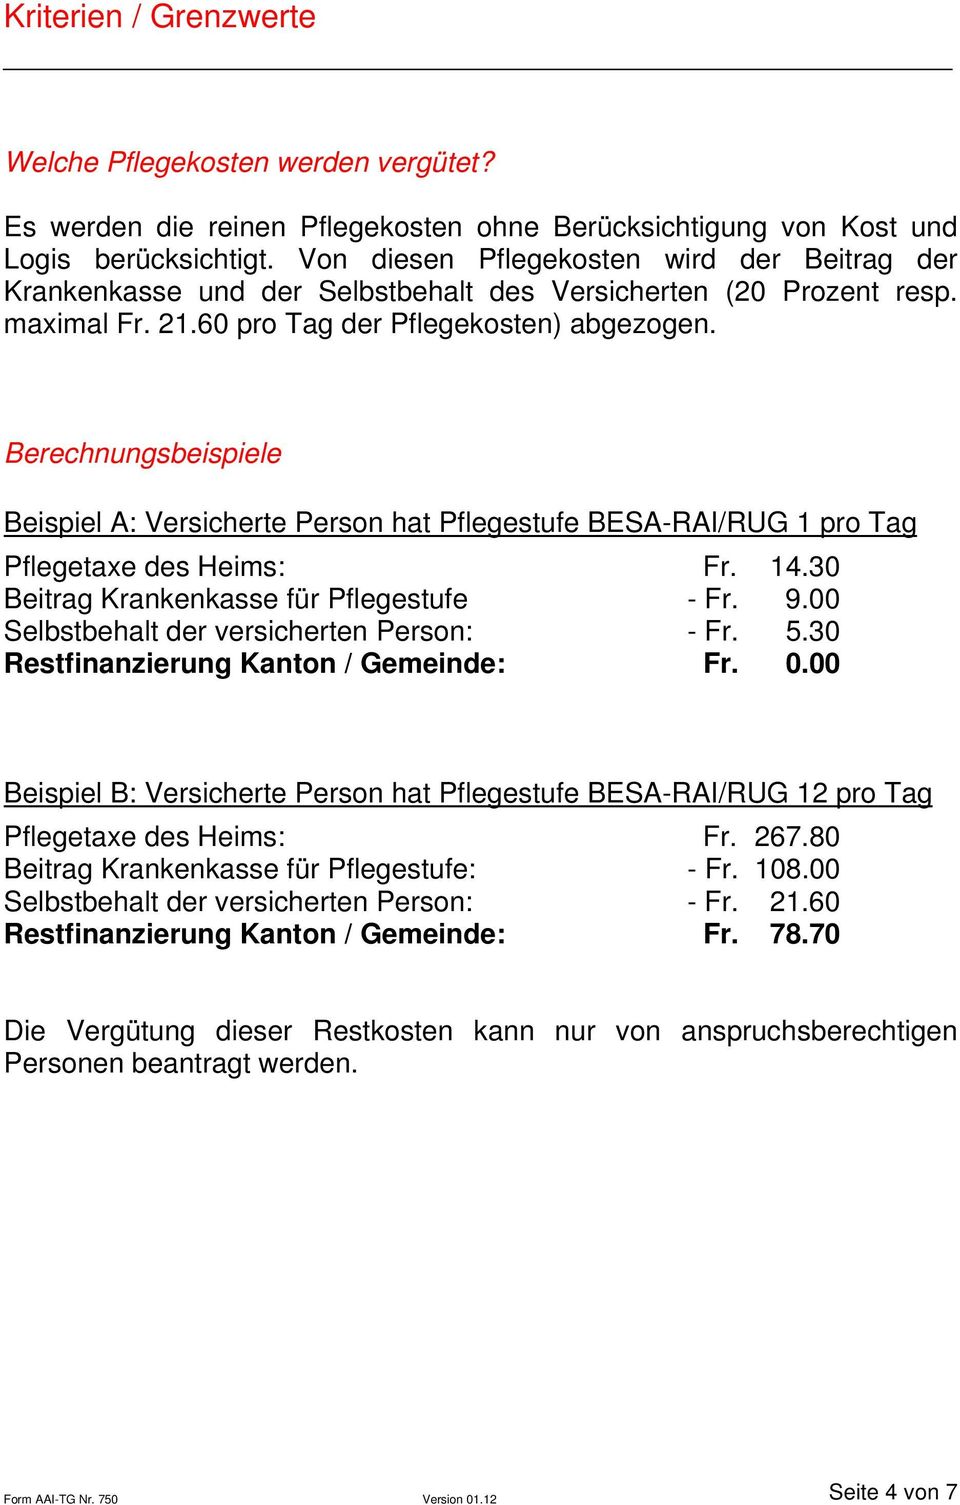 Berechnungsbeispiele Beispiel A: Versicherte Person hat Pflegestufe BESA-RAI/RUG 1 pro Tag Pflegetaxe des Heims: Fr. 14.30 Beitrag Krankenkasse für Pflegestufe - Fr. 9.